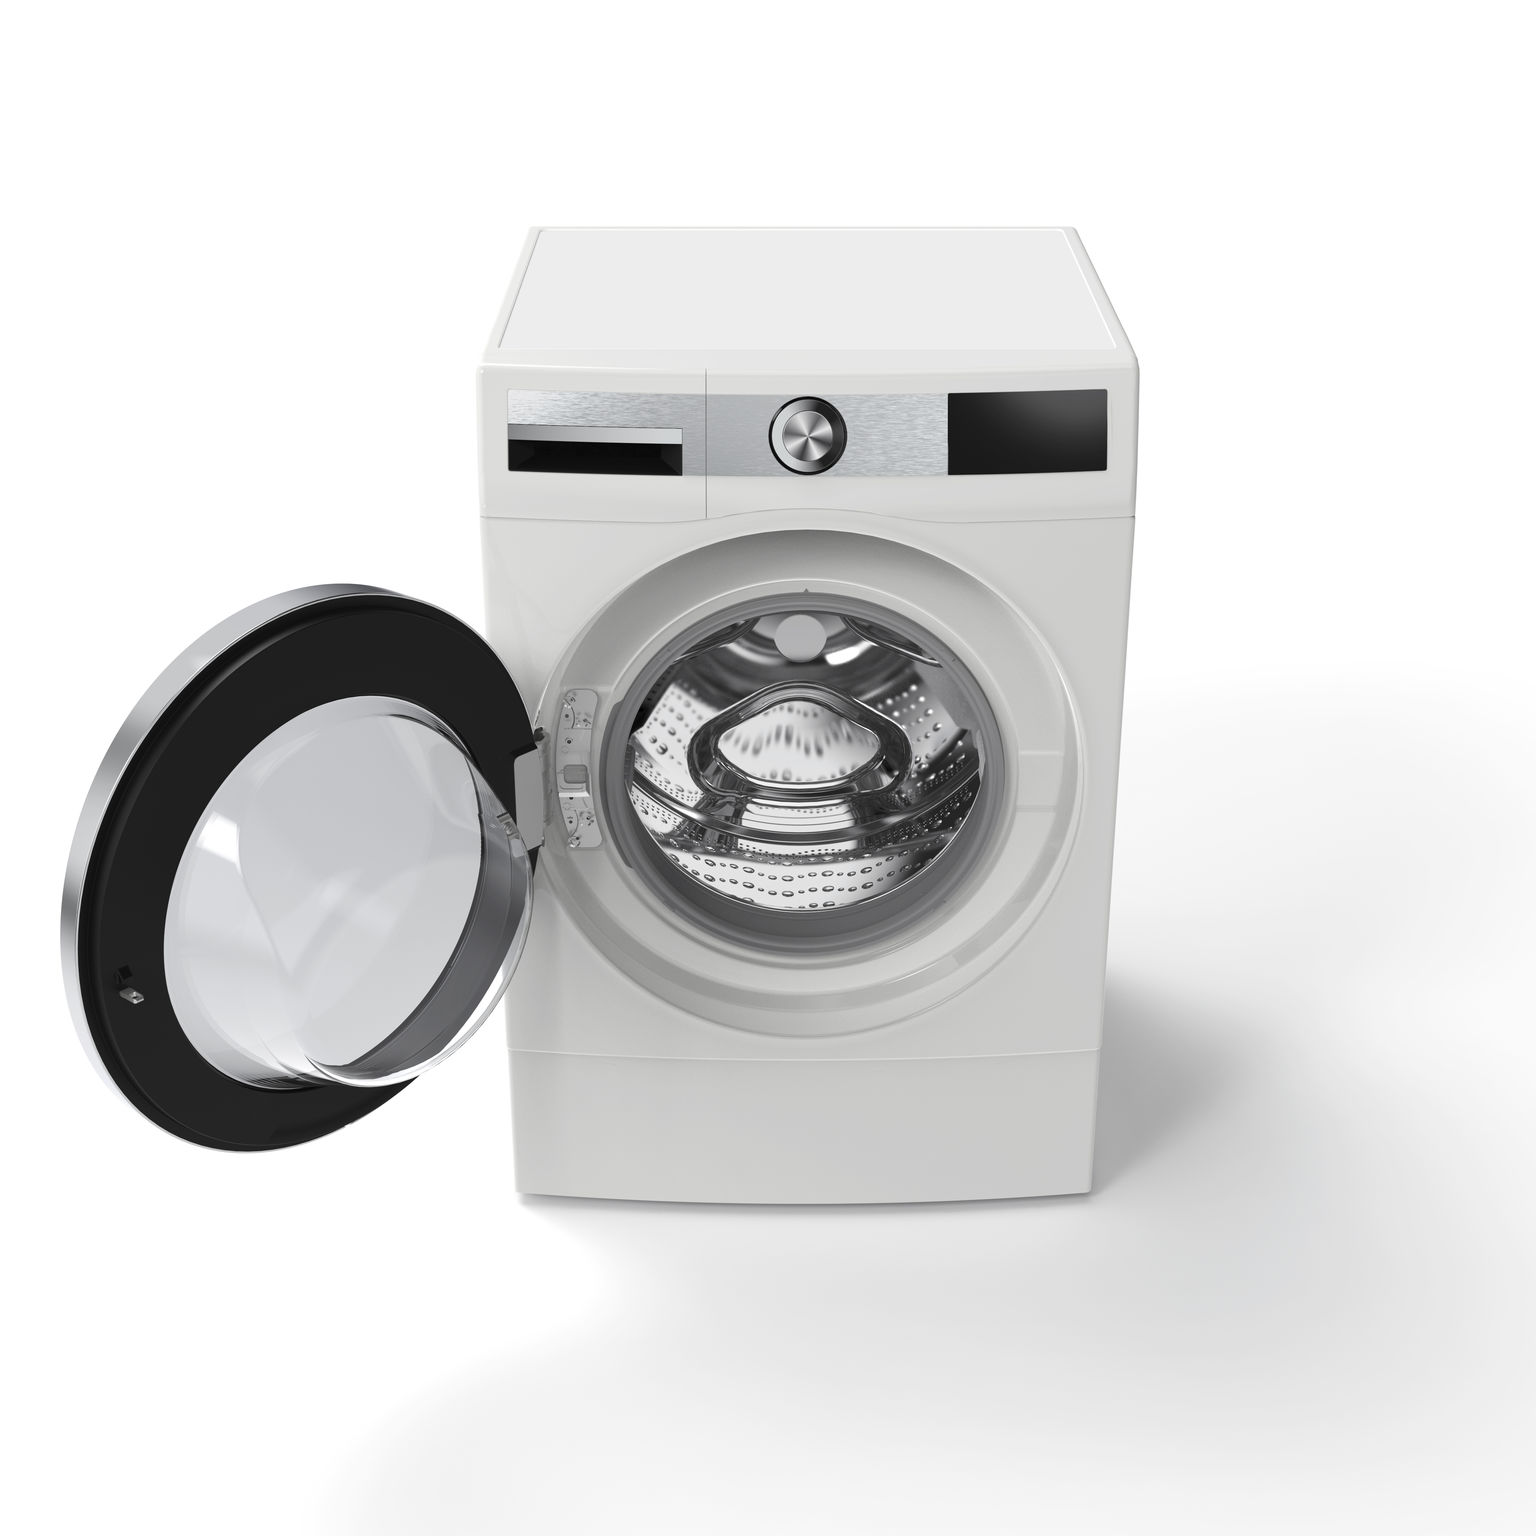 BOSCH Supersize Washer-dryer Serie 6